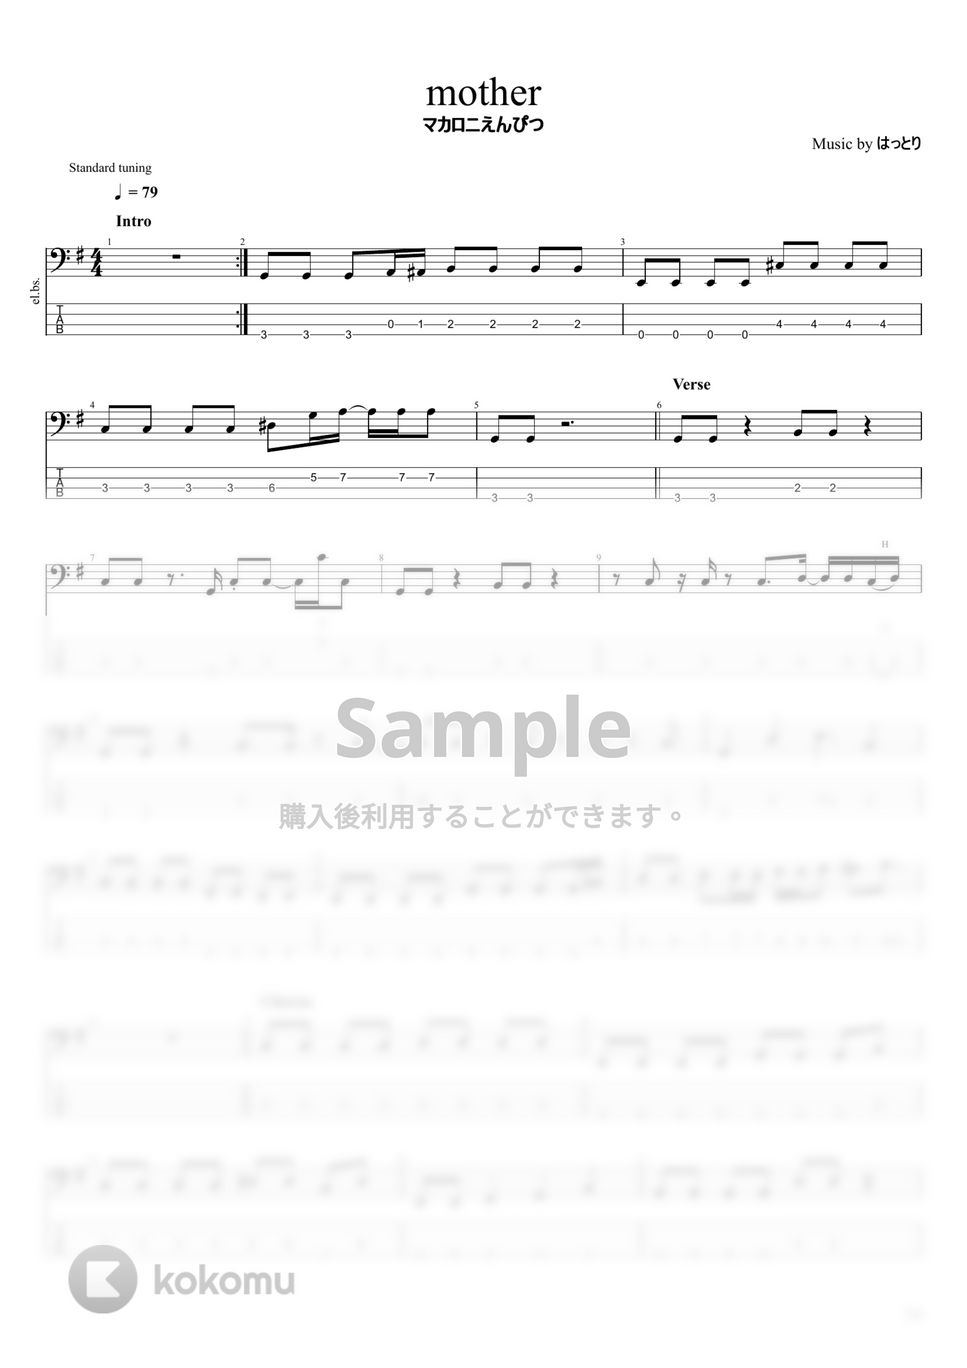 マカロニえんぴつ - マカロニえんぴつ楽譜集Vol.3 (10曲) by まっきん